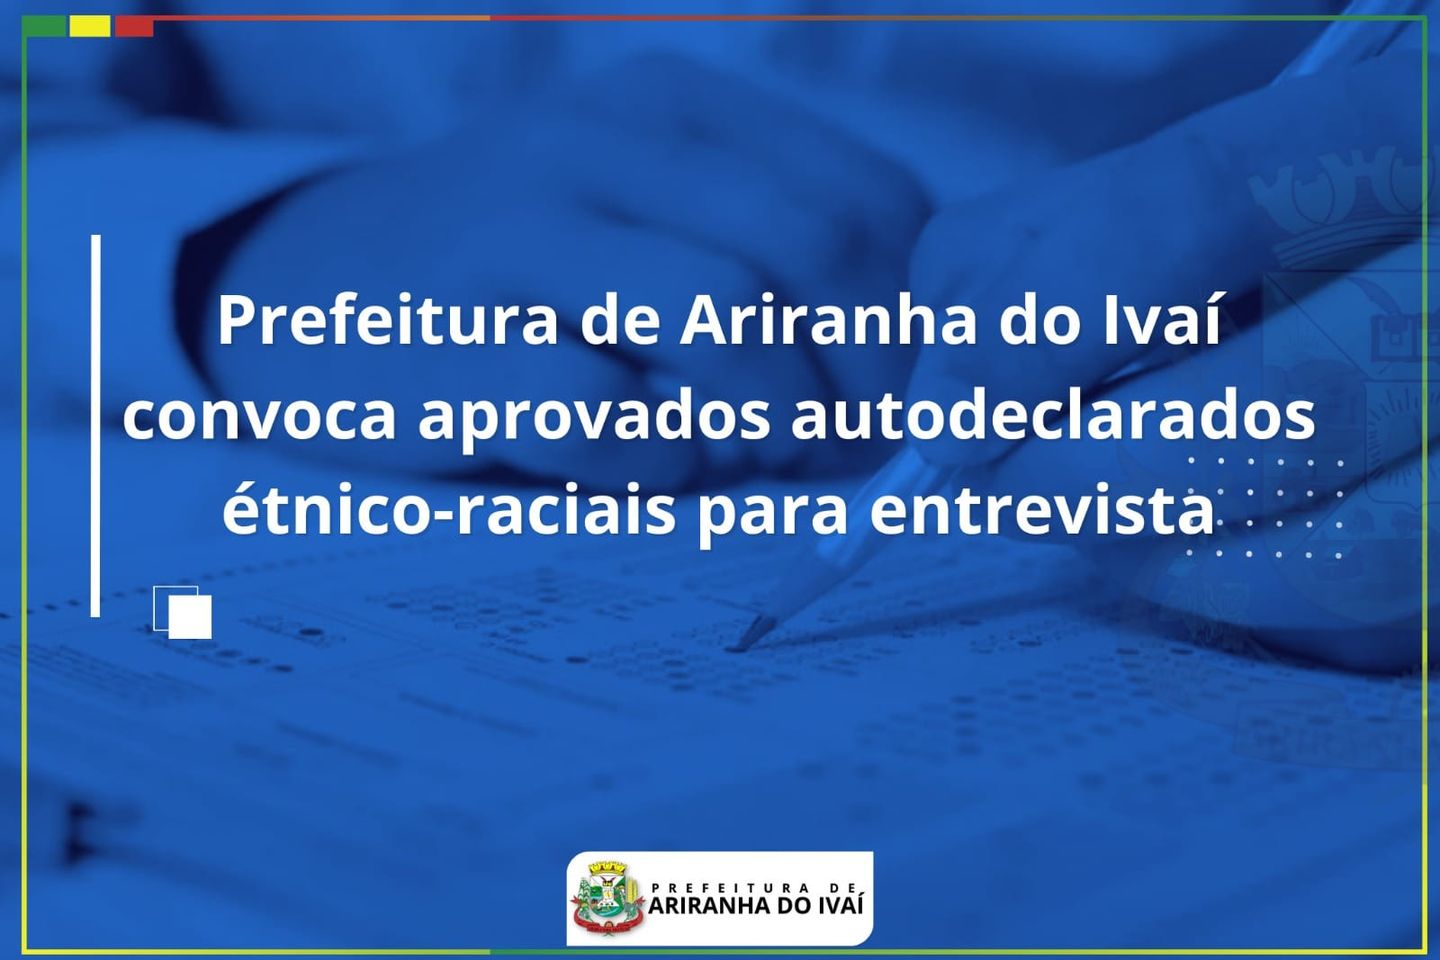 Prefeitura de Ariranha do Ivaí convoca aprovados autodeclarados étnico-raciais para entrevista